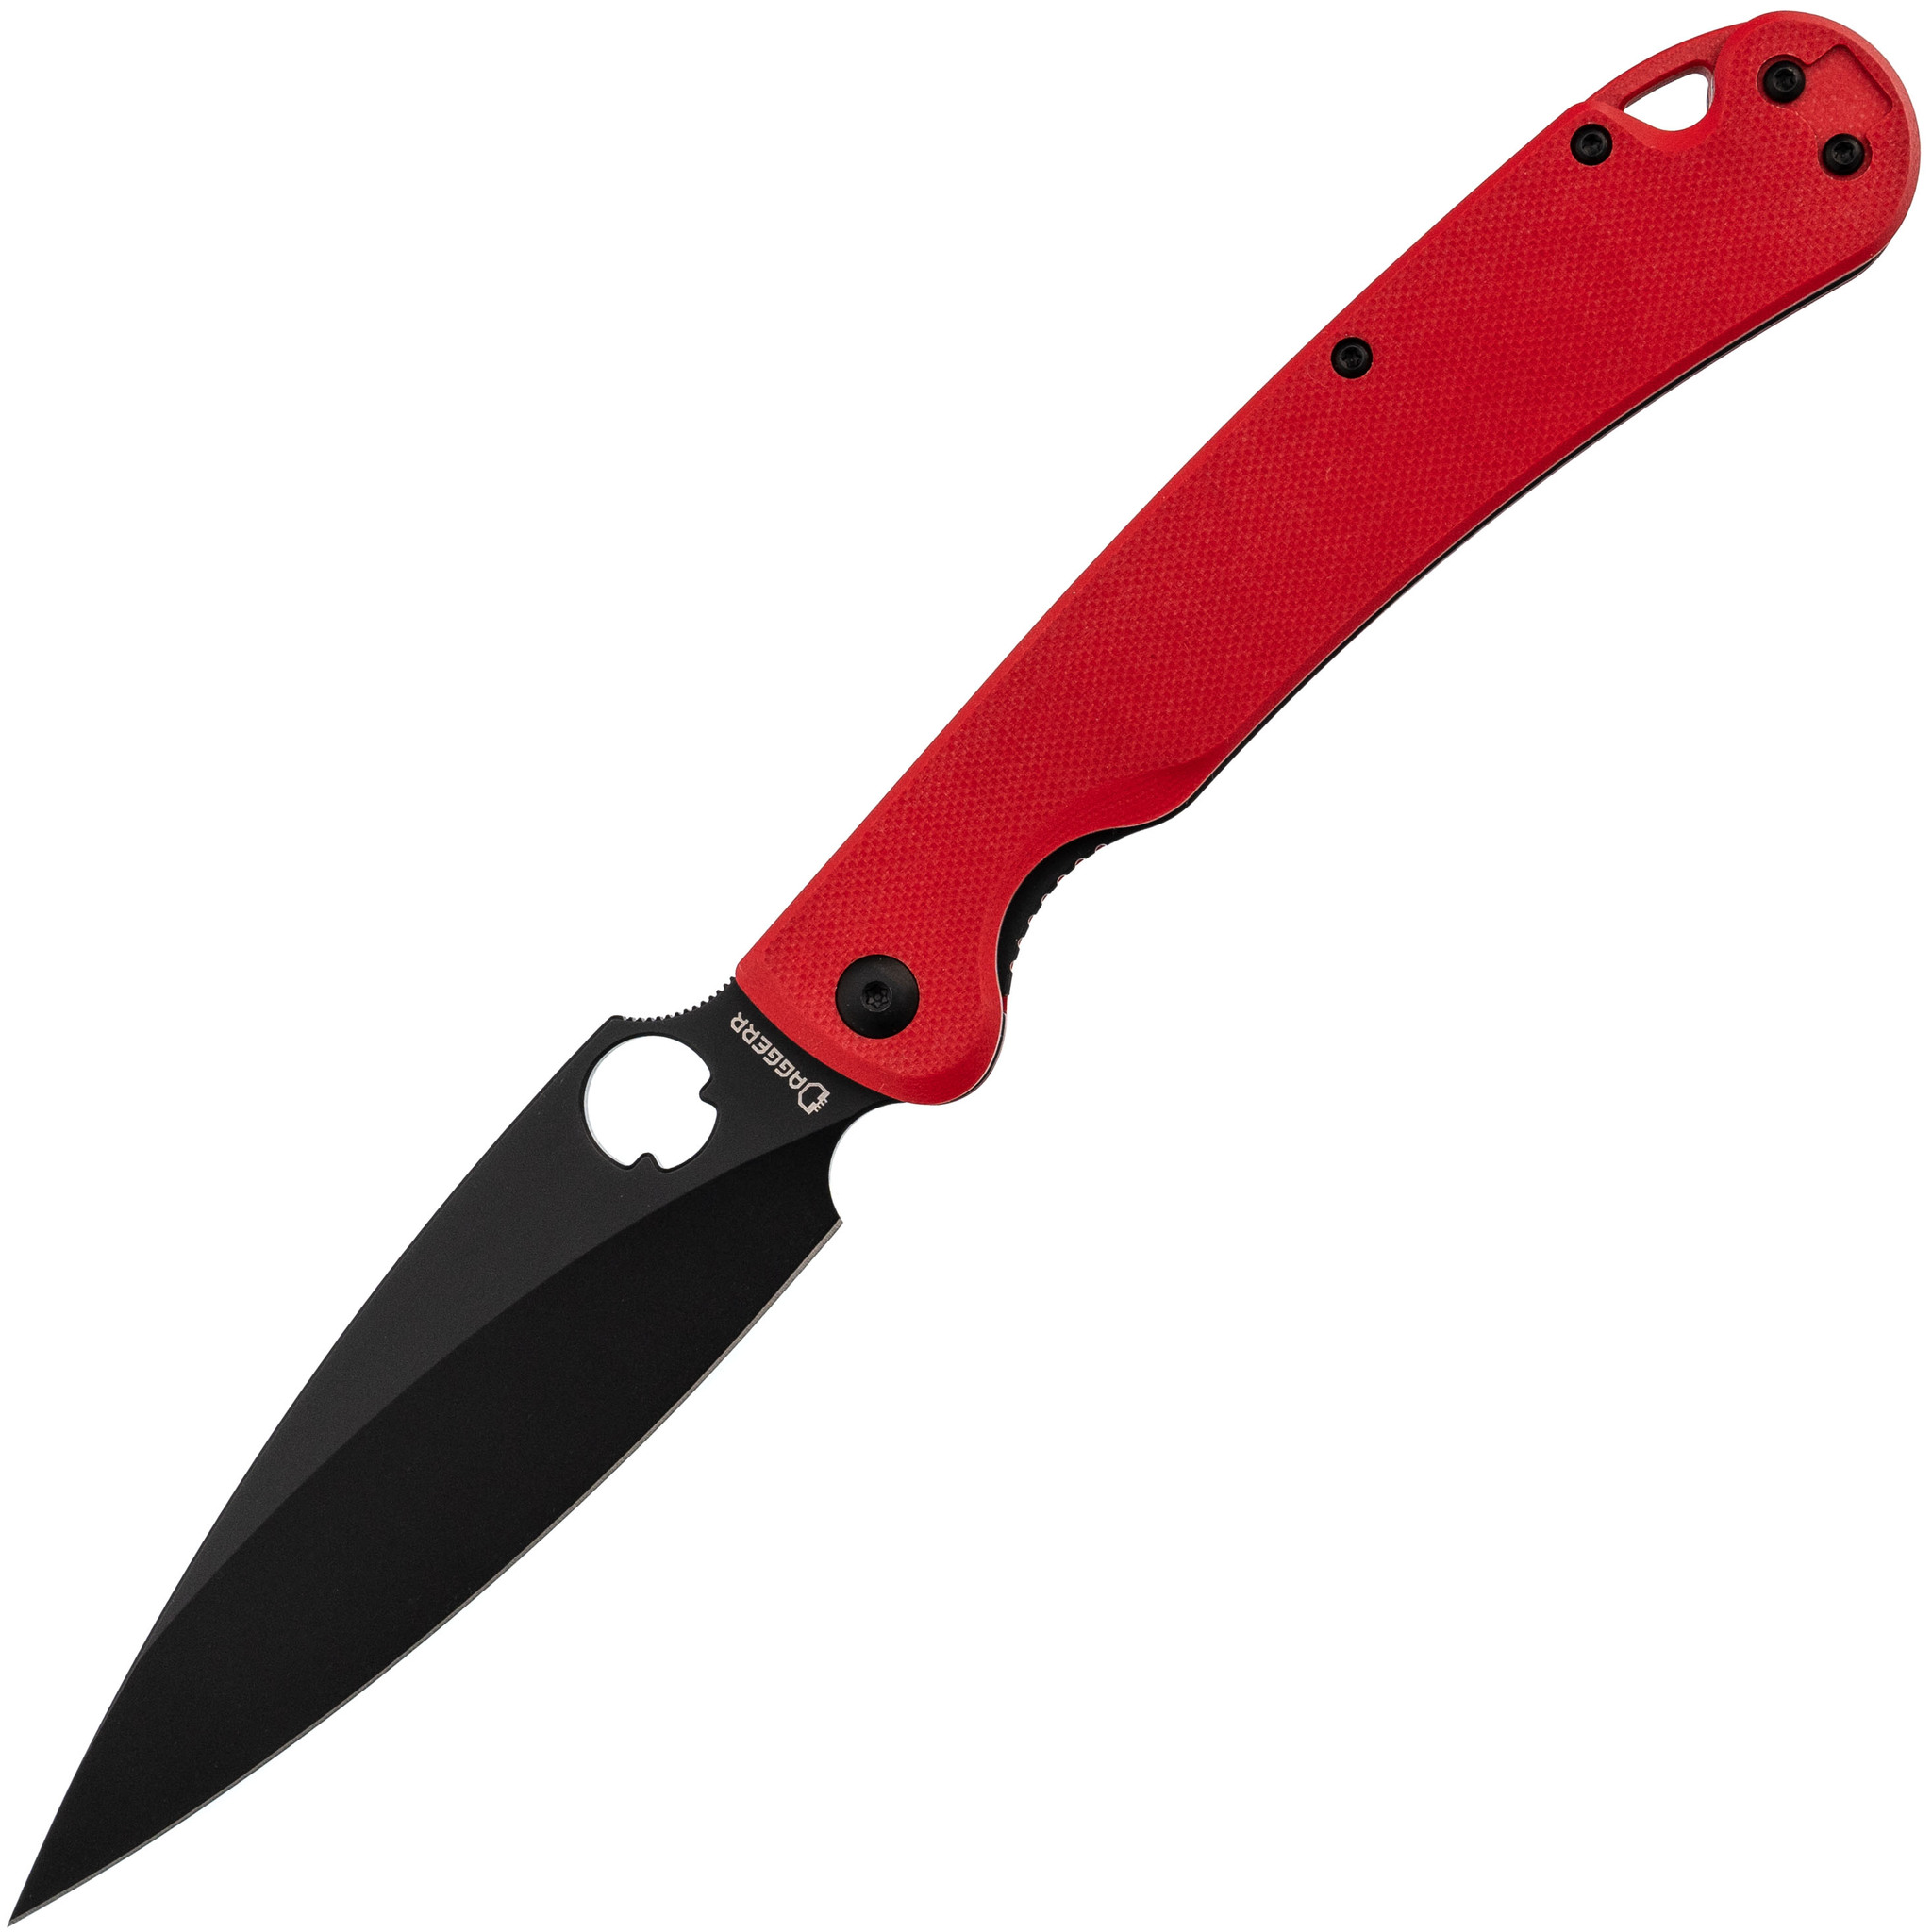 Складной нож Daggerr Sting XL red BW DLC, сталь D2, рукоять G10, Бренды, DAGGERR